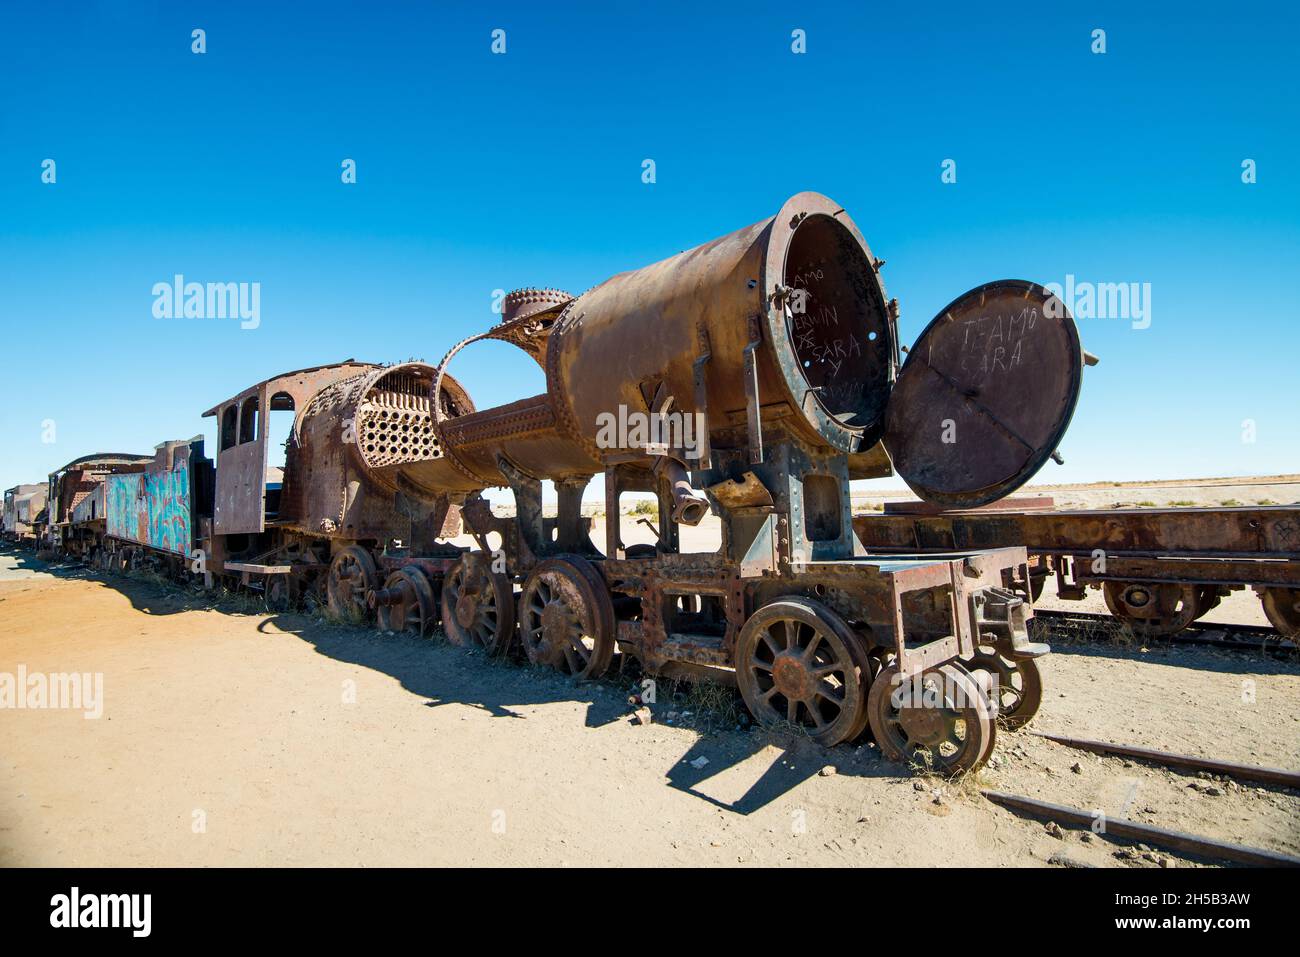 Rostiger alter Dampfzug in der bolivianischen Wüste - Eisenbahnfriedhof in Uyuni Stockfoto